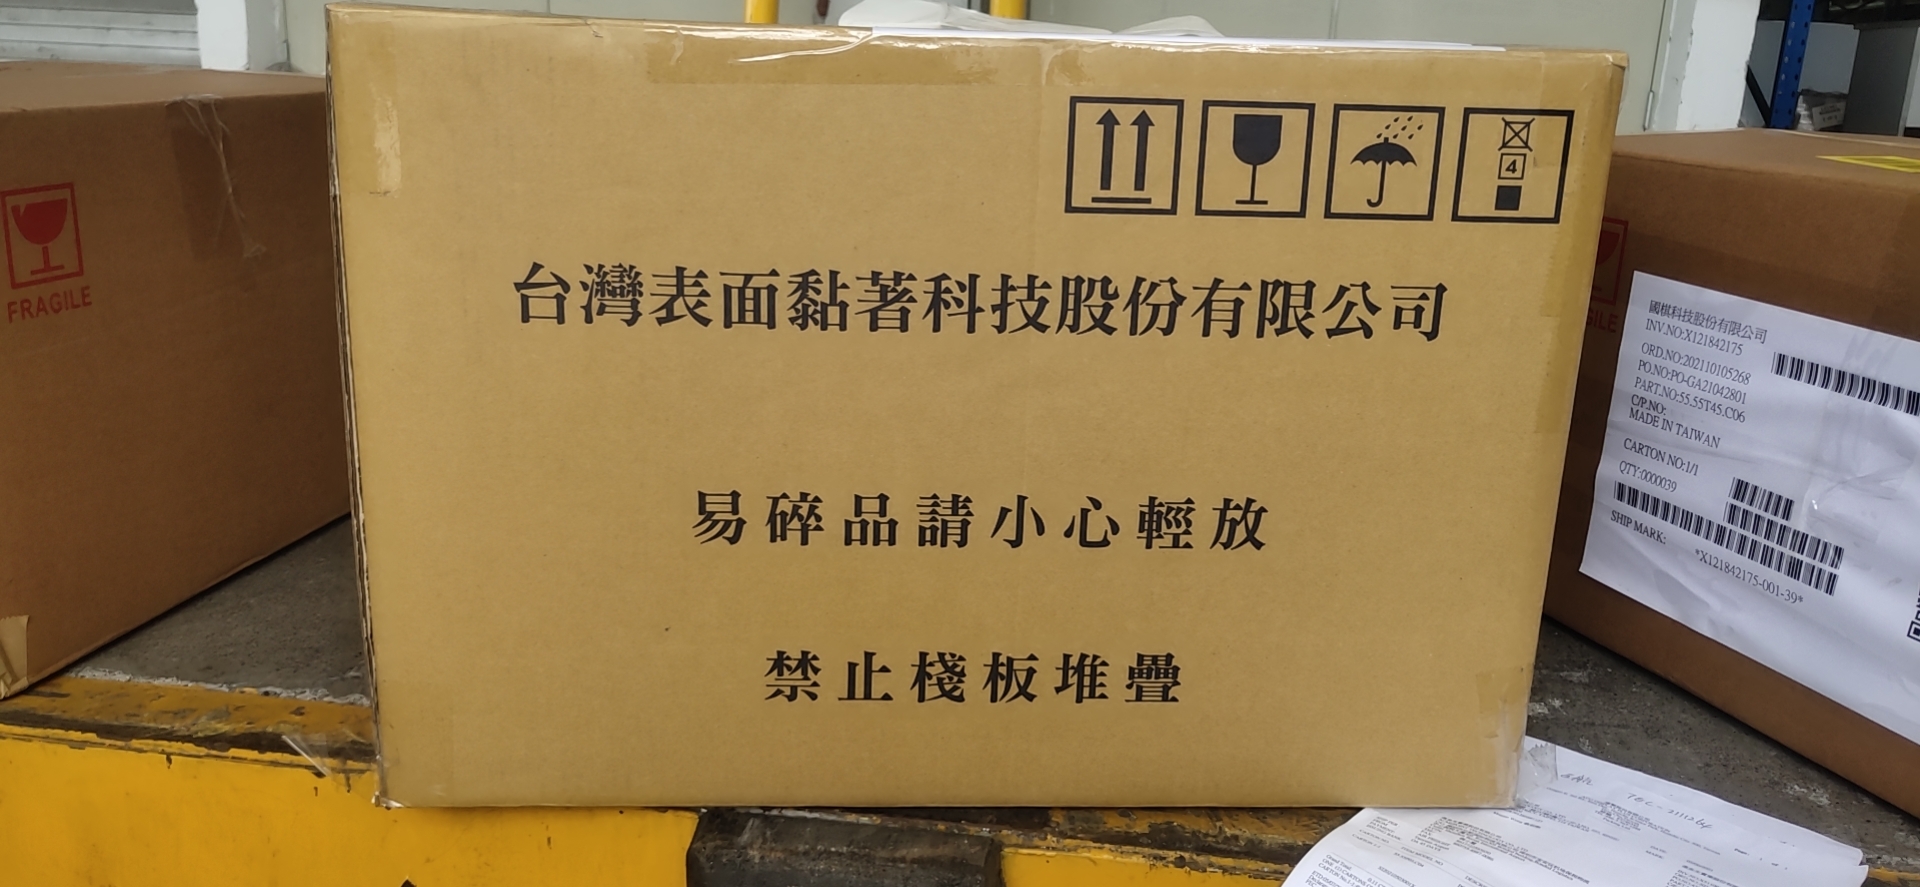 深圳机场电池进口清关 广州机场电池进口清关